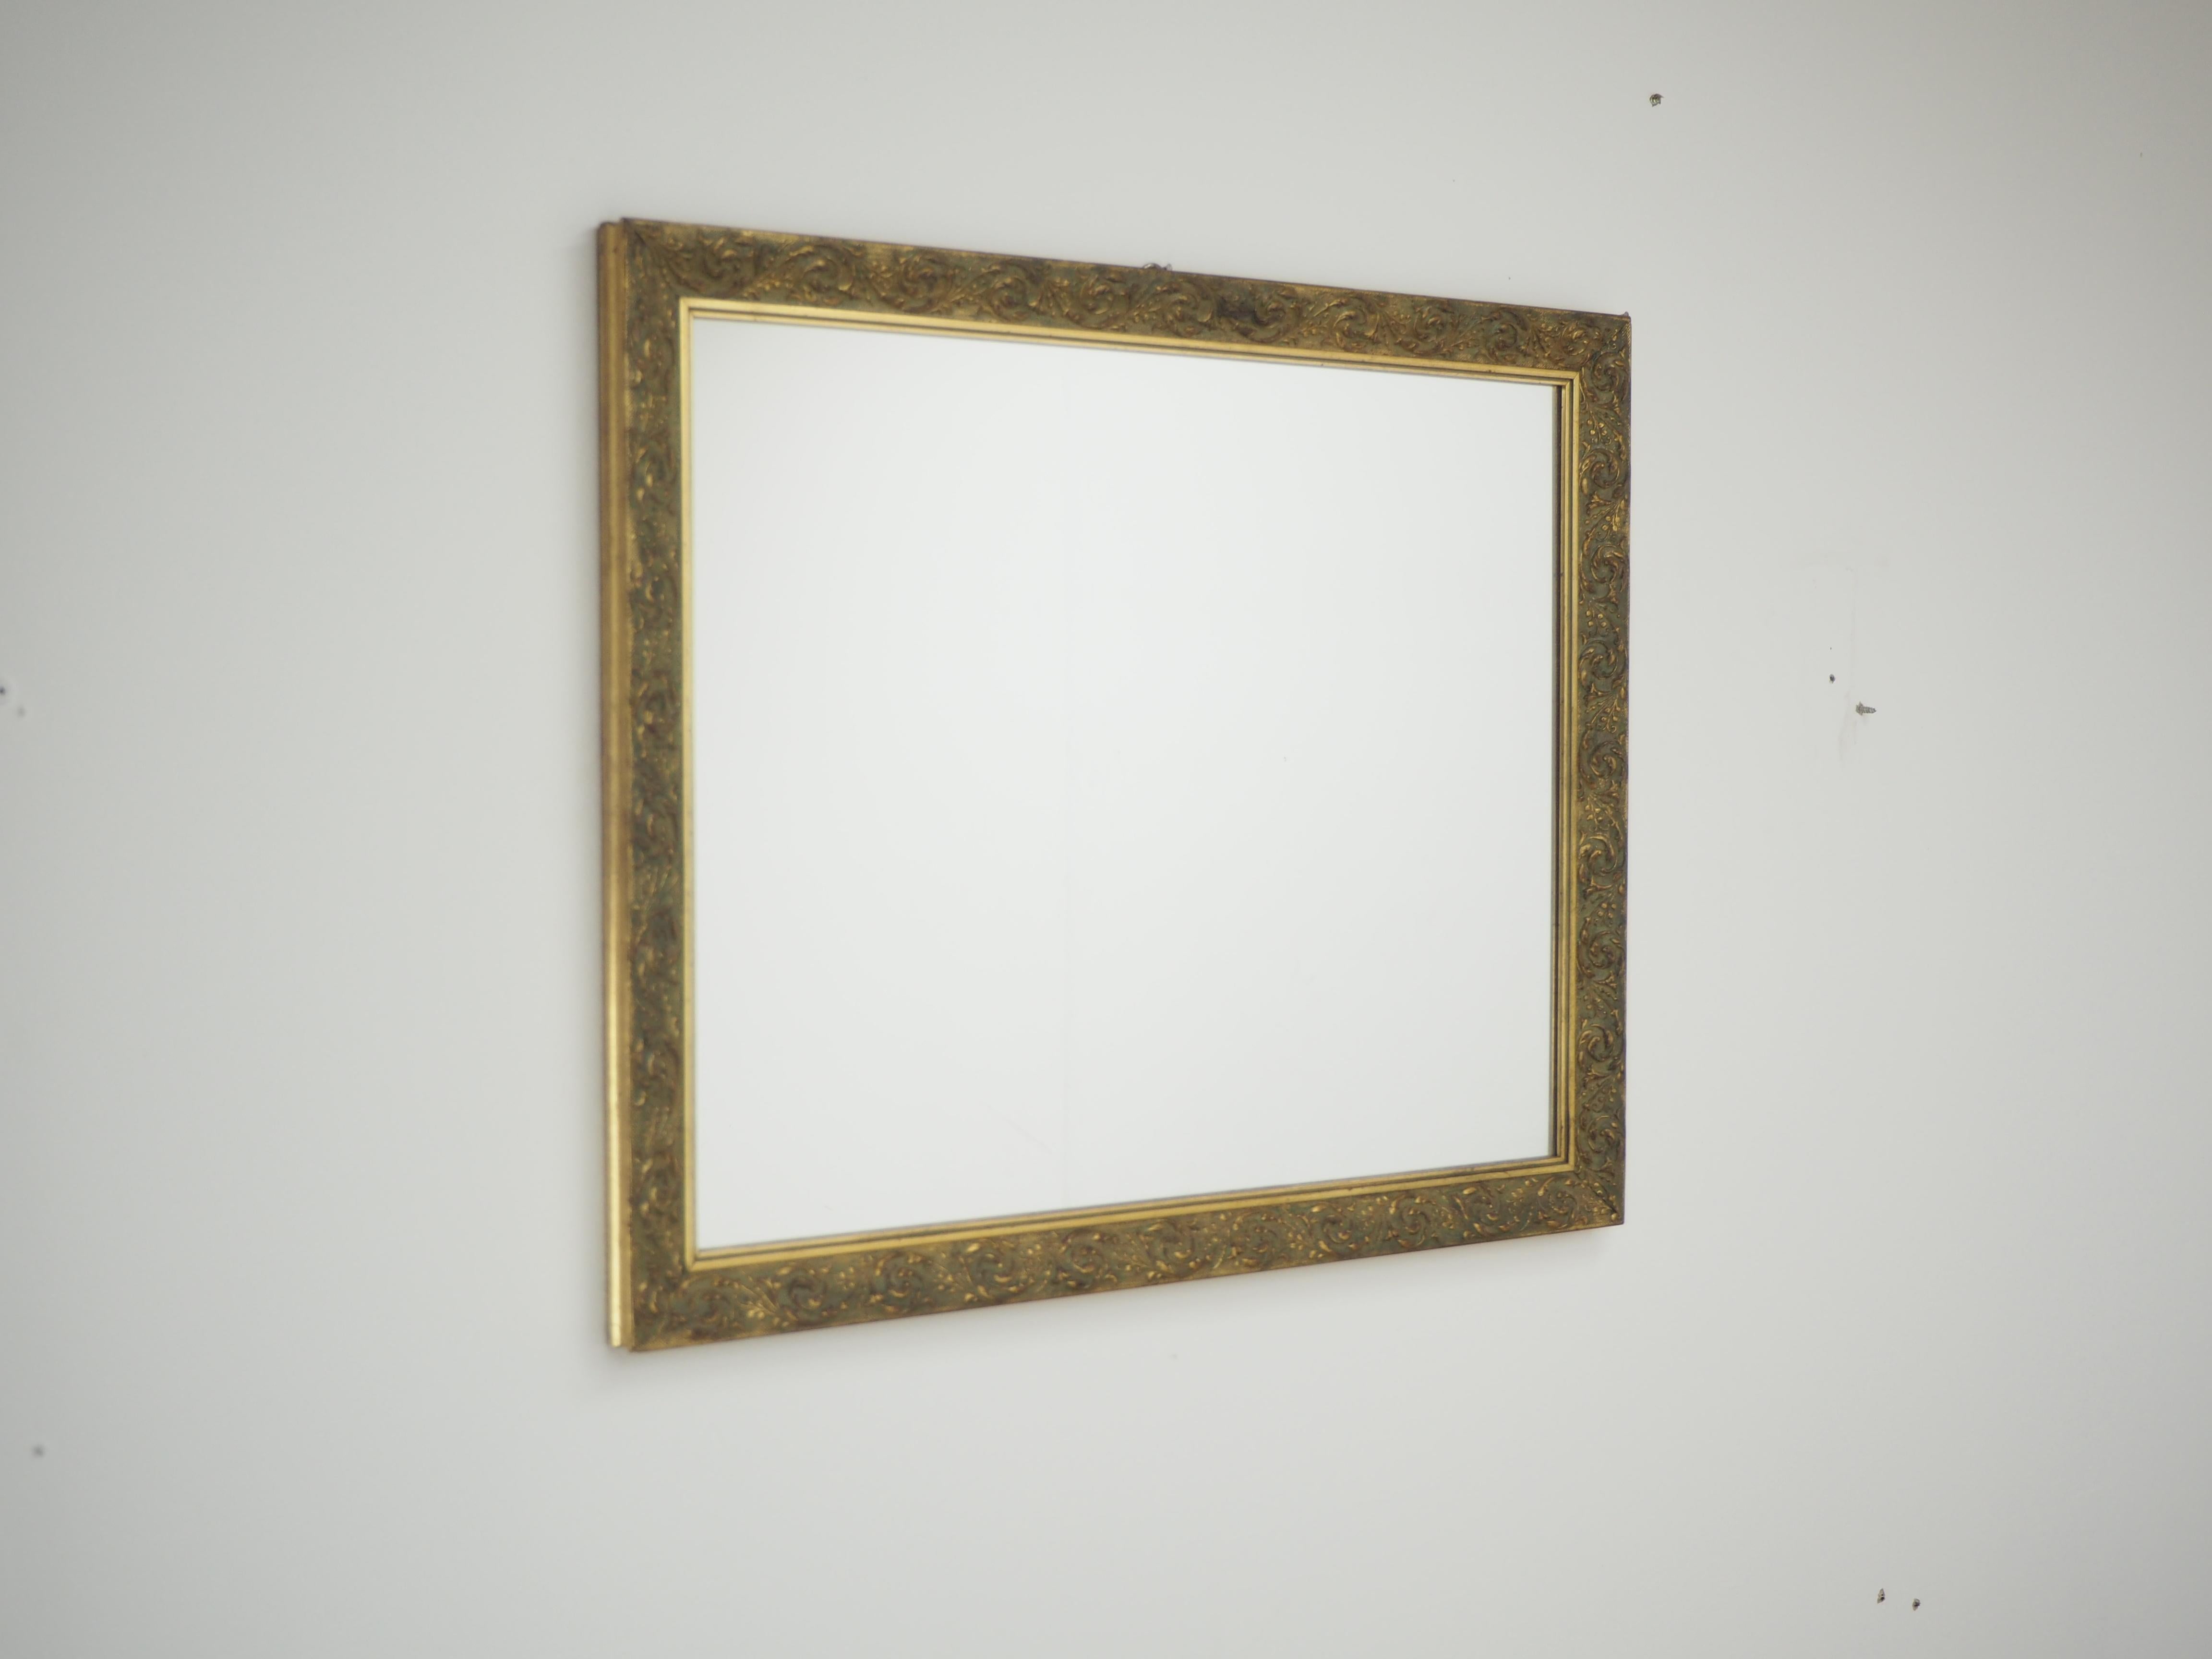 - Holzrahmen
- Handgefertigt
- Ursprünglicher Zustand
- Der Spiegel ist das Neue.